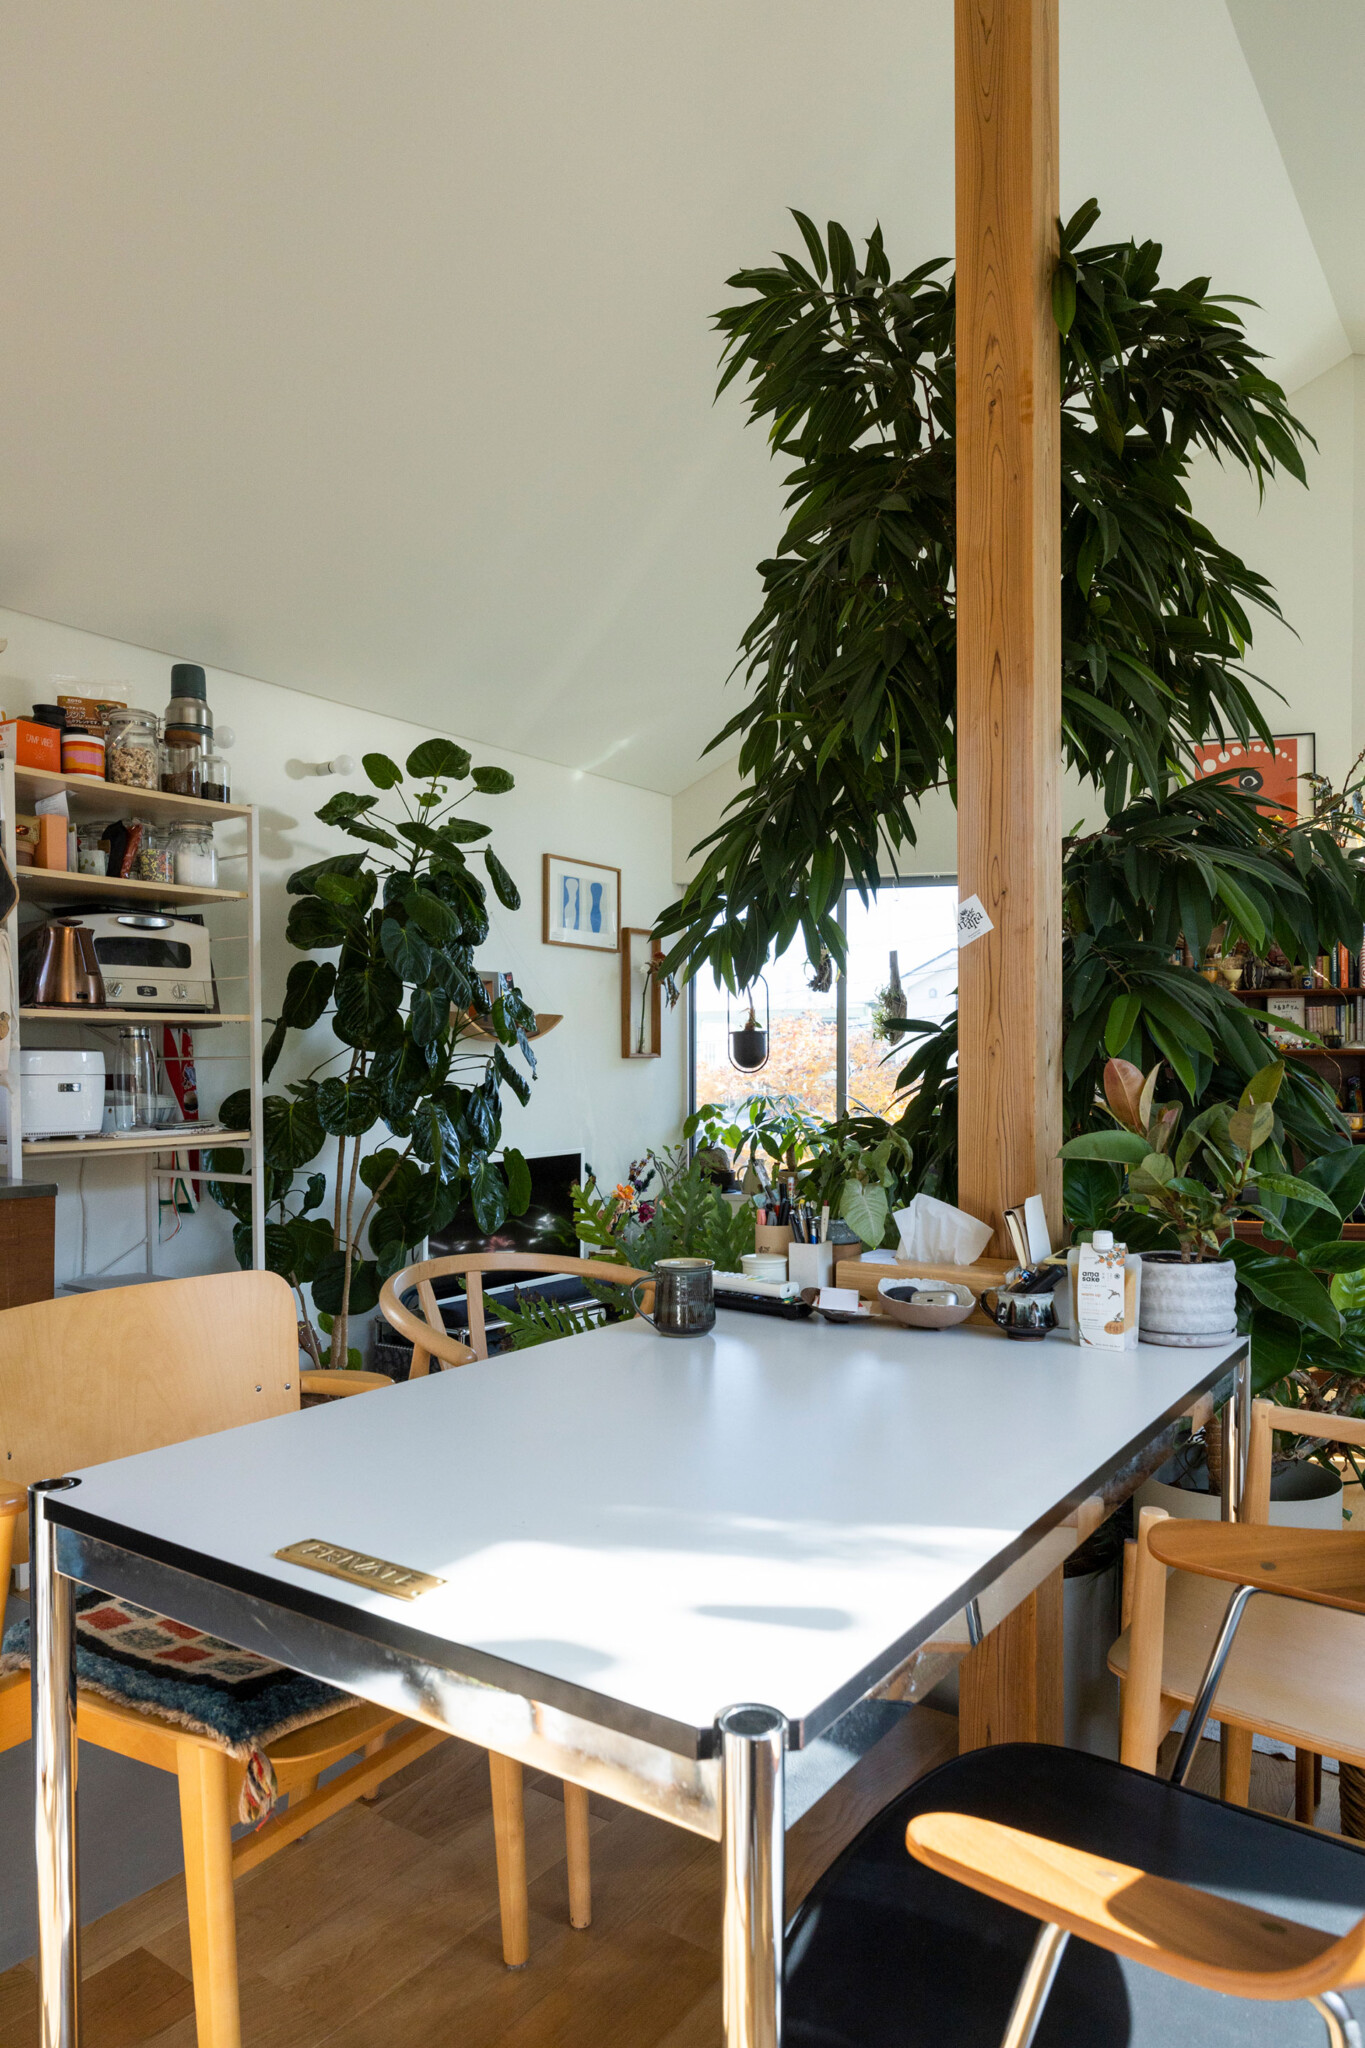 シンボルツリーの後ろに置いたダイニングテーブルはUSMハラー。天板に真鍮の“PRIVATE”タグをつける遊び心も。「植物や木のものが多い空間なので、敢えてテイストの違う素材のテーブルを選びました」。イスもテーブルもACTUSで揃えた。